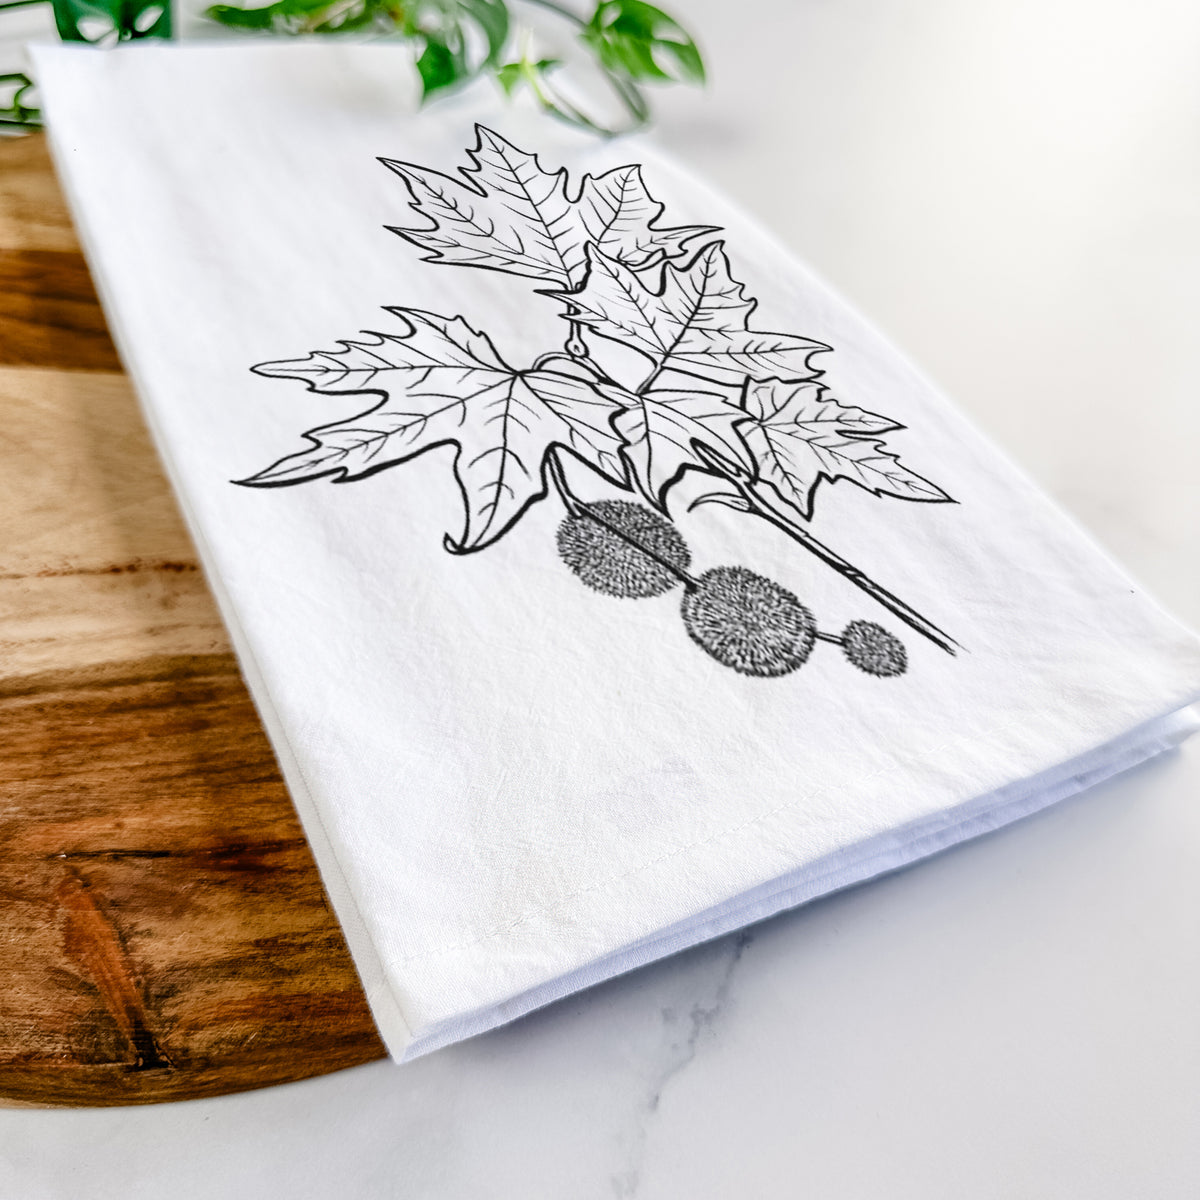 Platanus Orientalis - Oriental Plane Tree Stem with Leaves Tea Towel